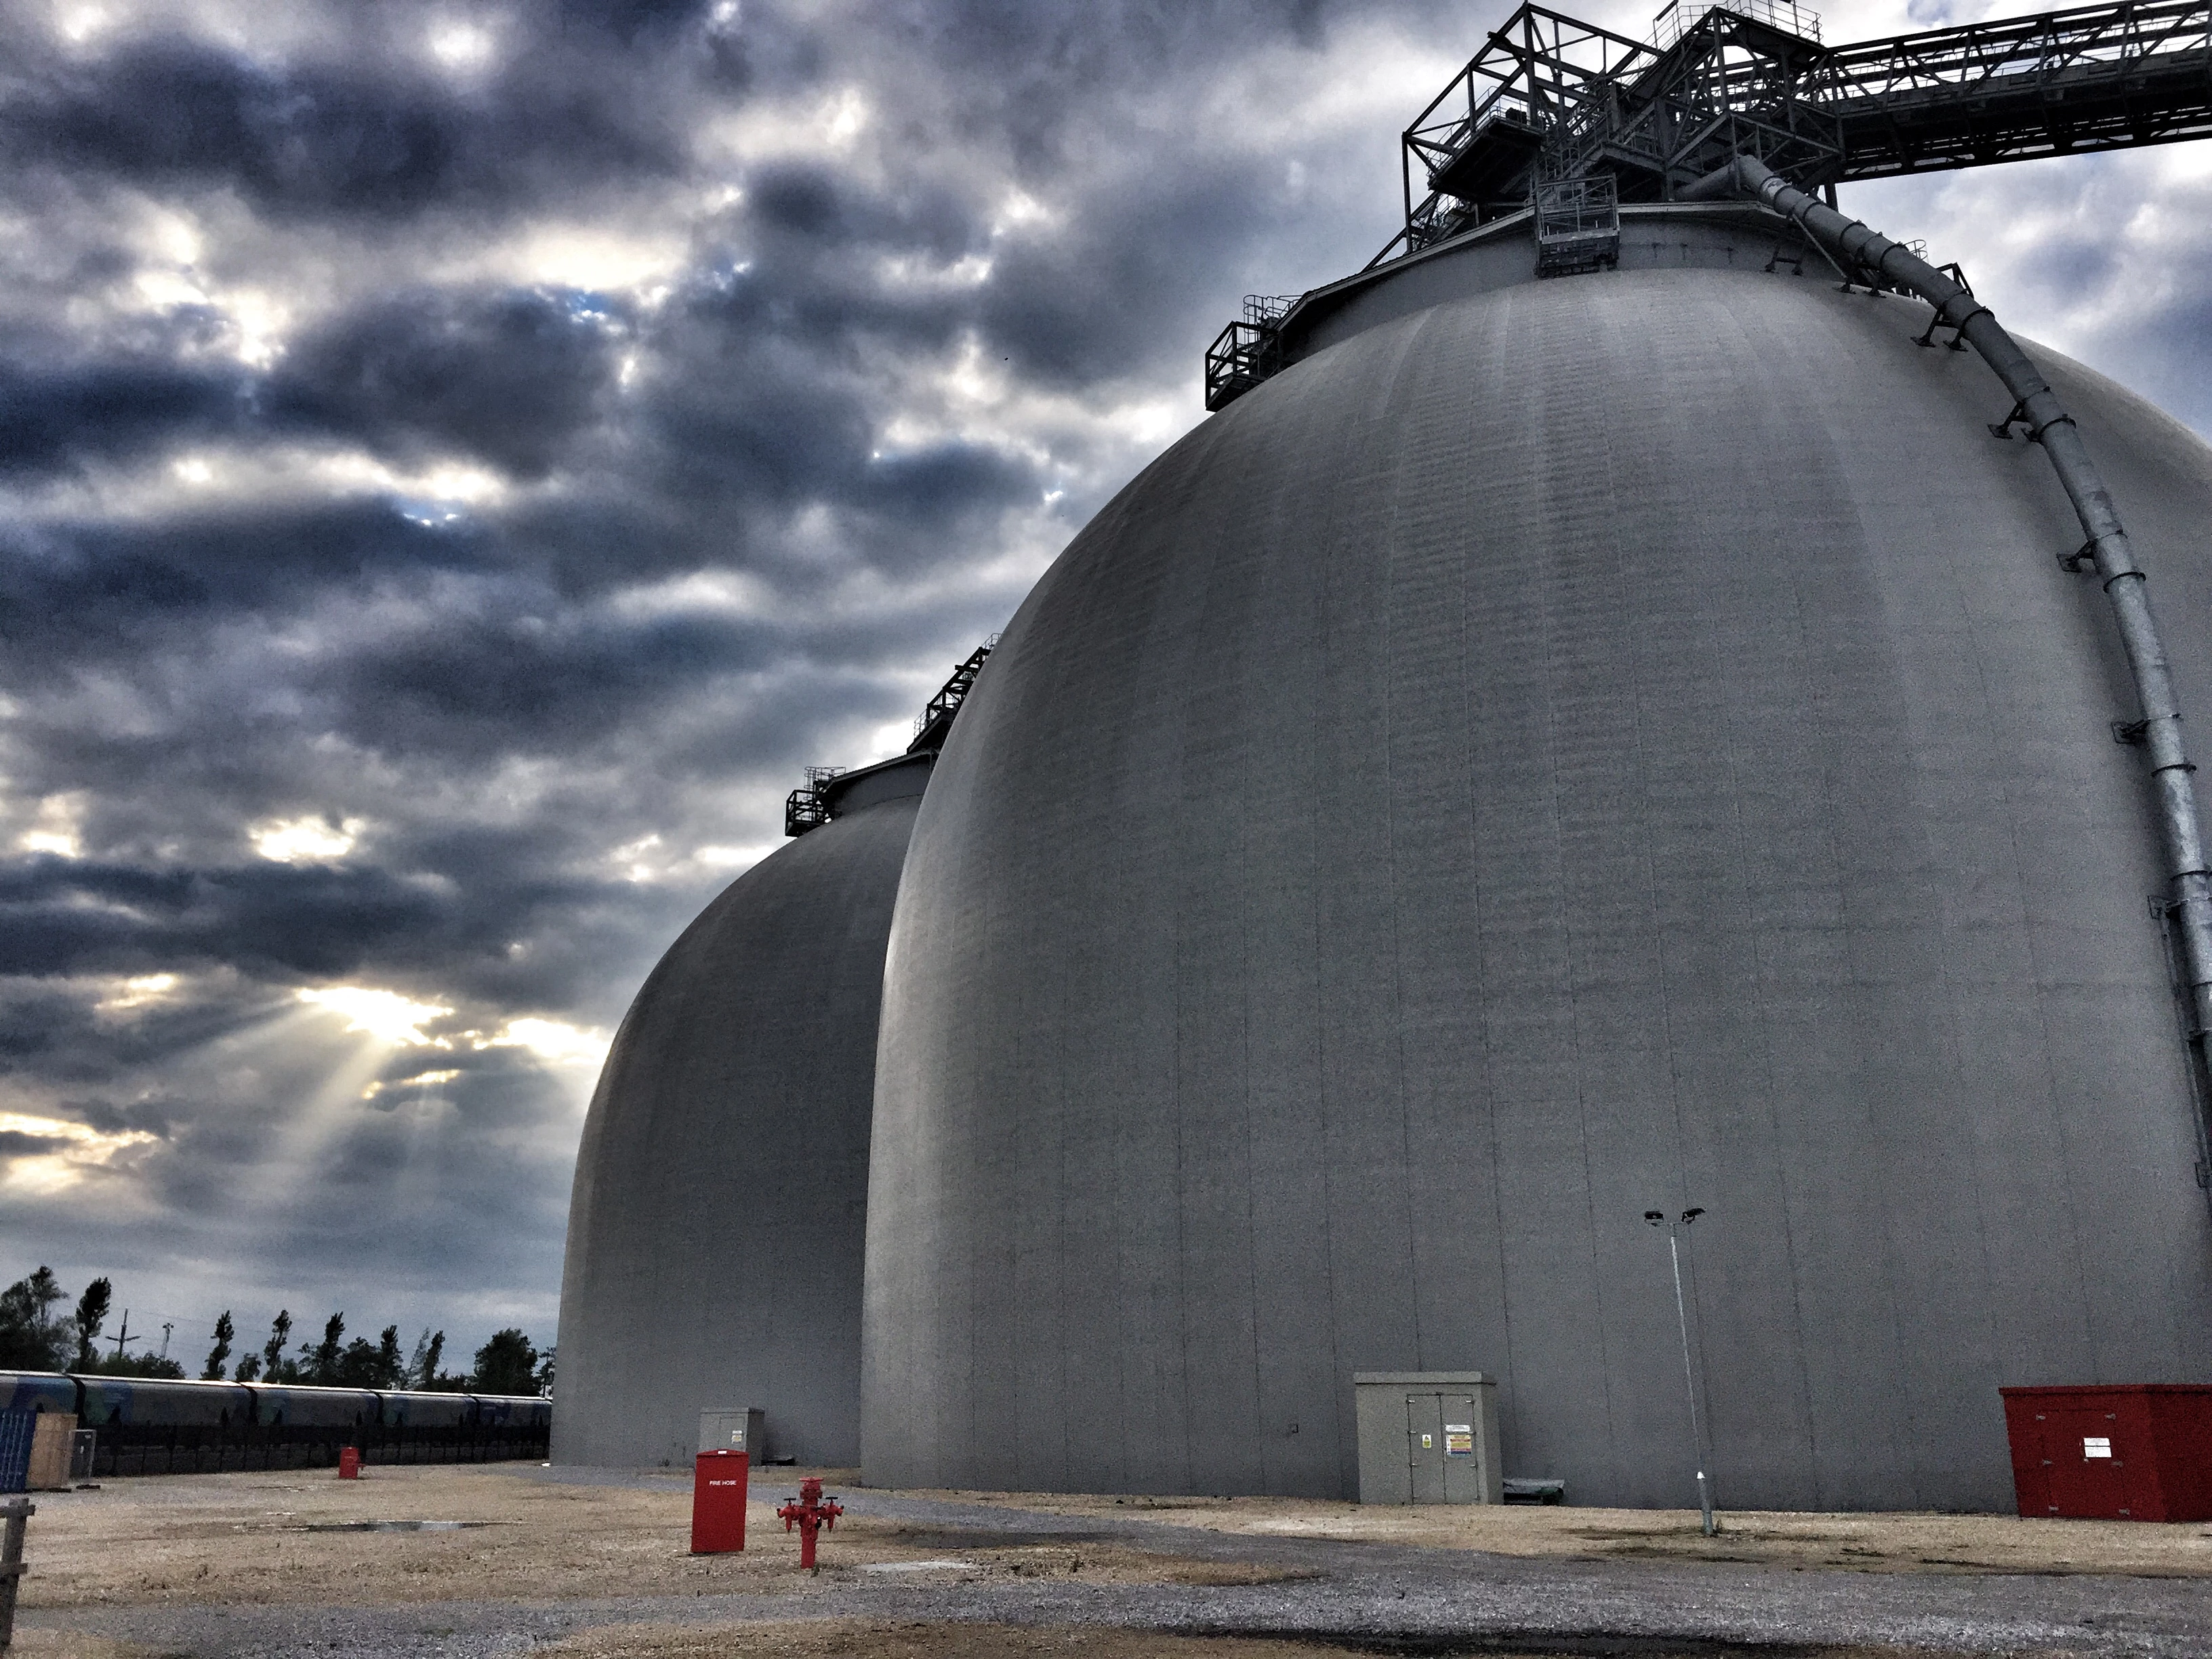 Biomass domes at Drax Power Station